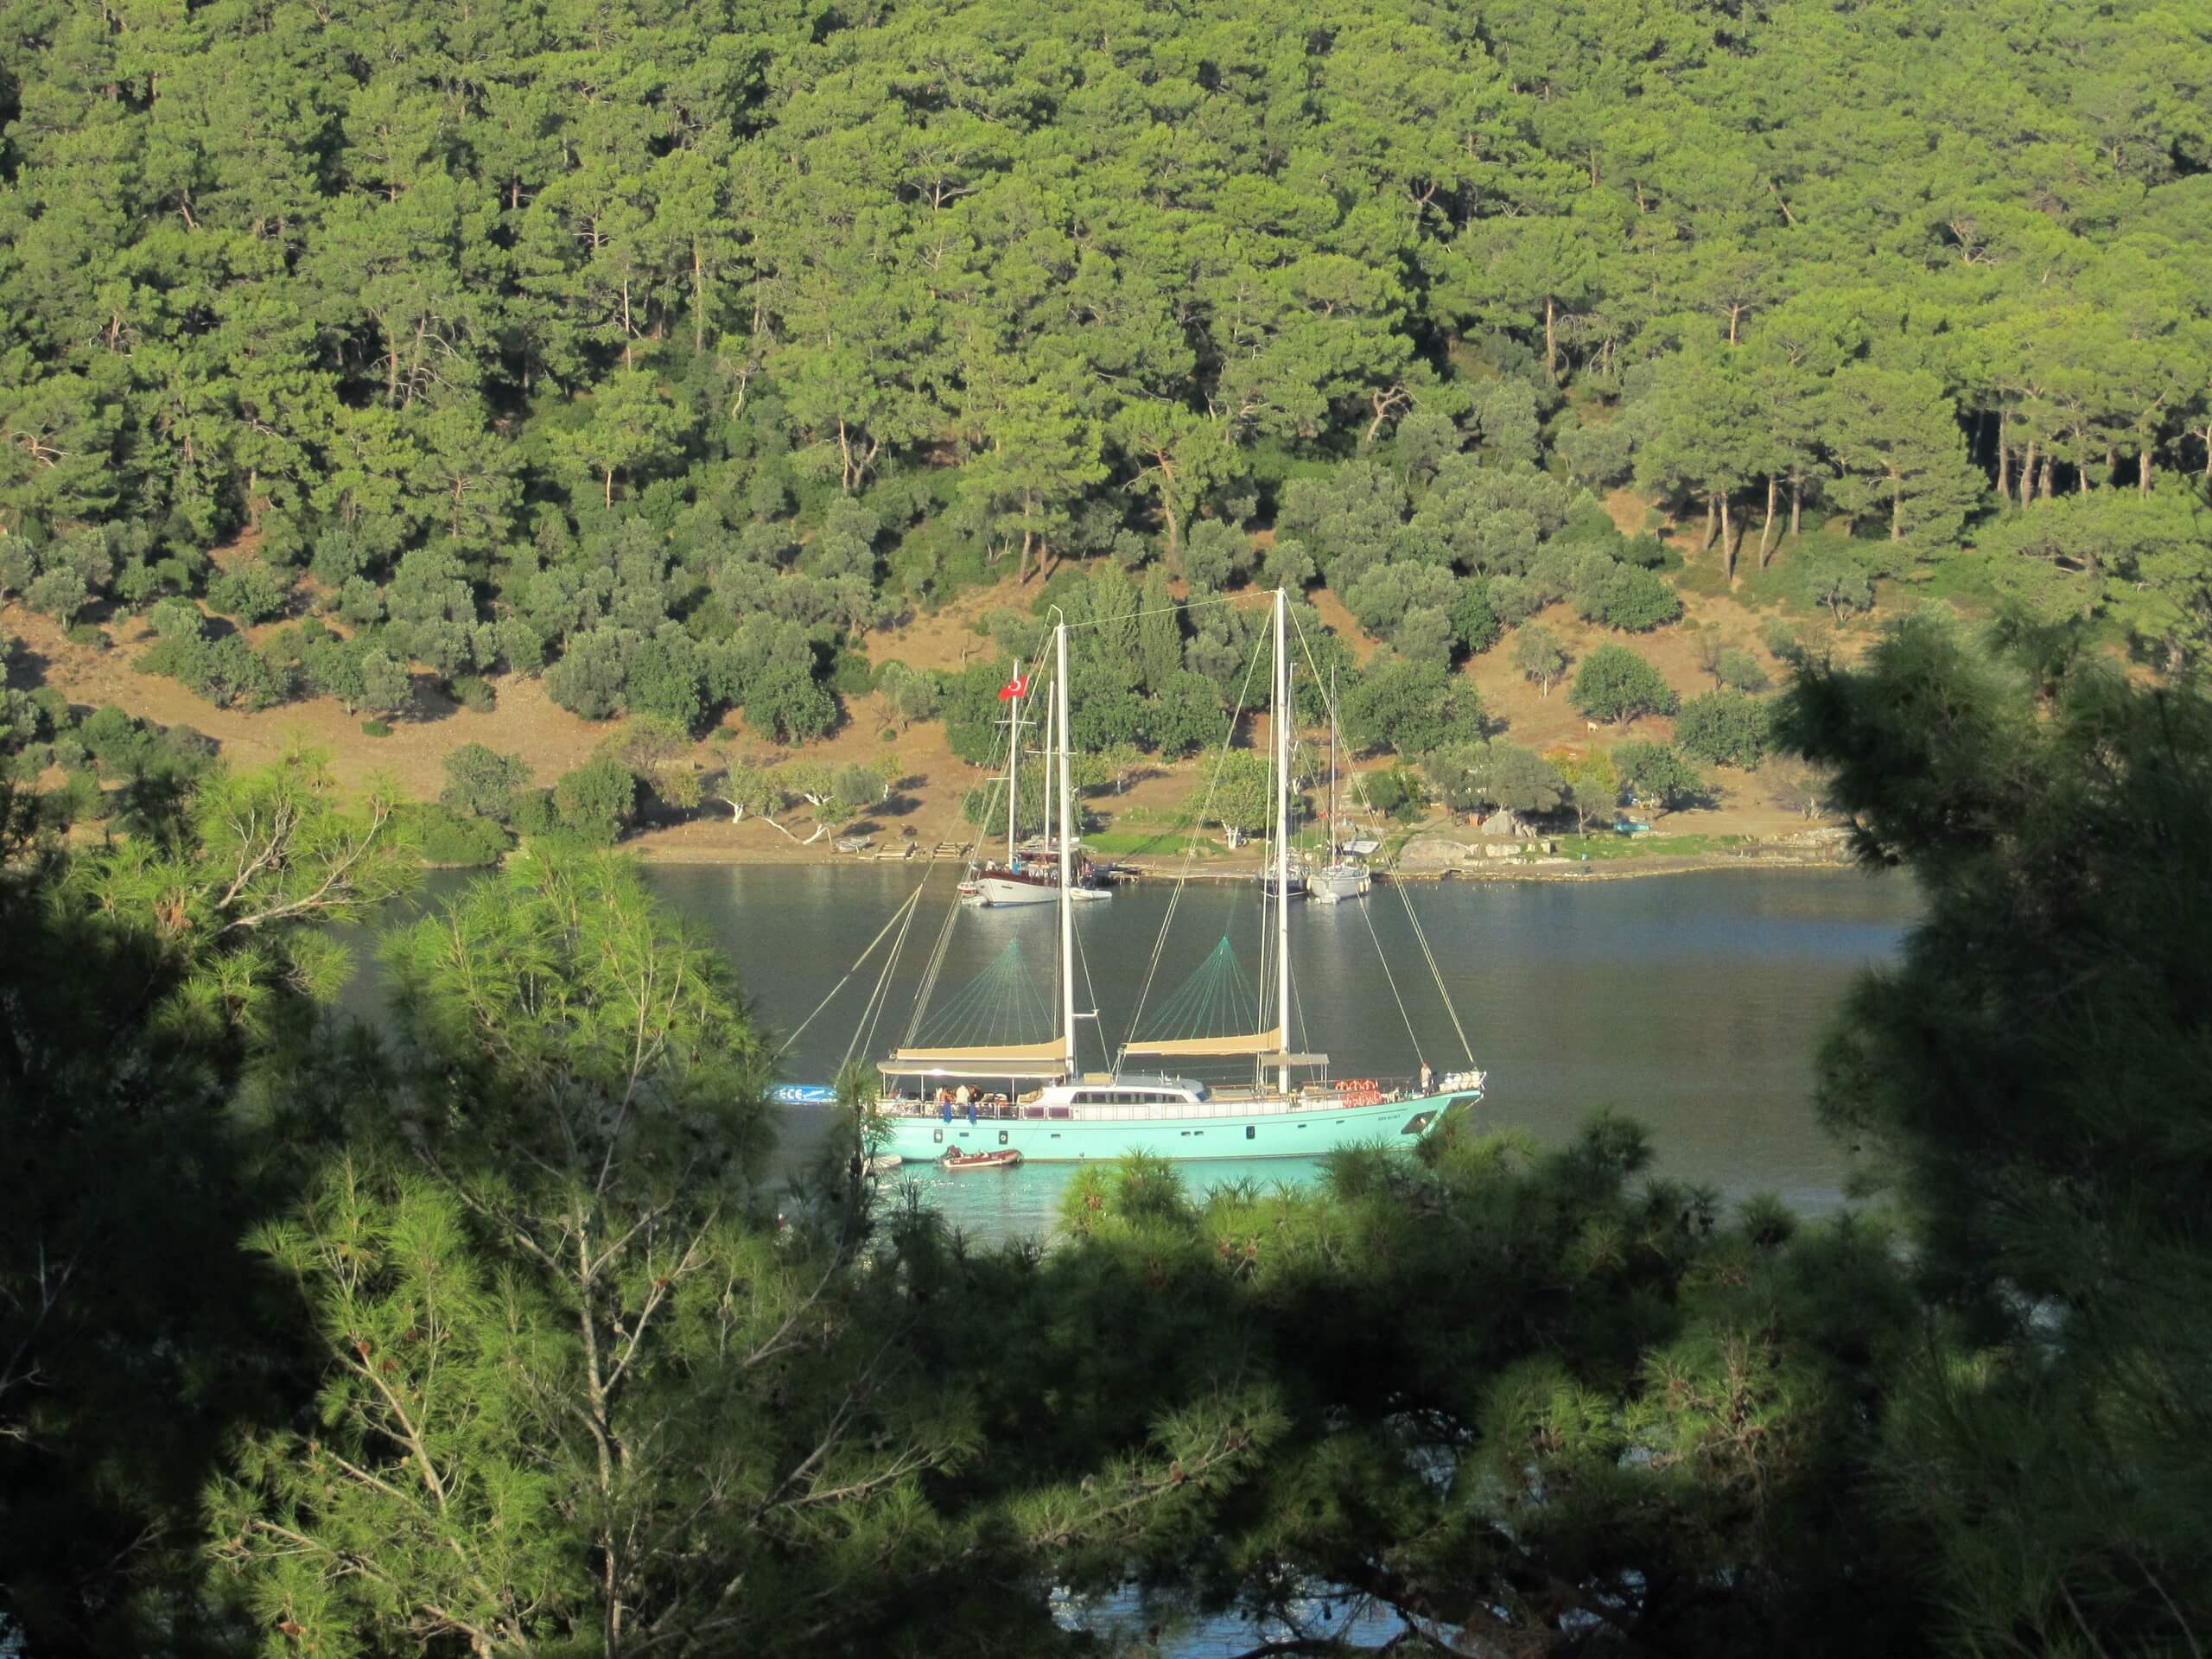 Gullet in a bay (Turkey)